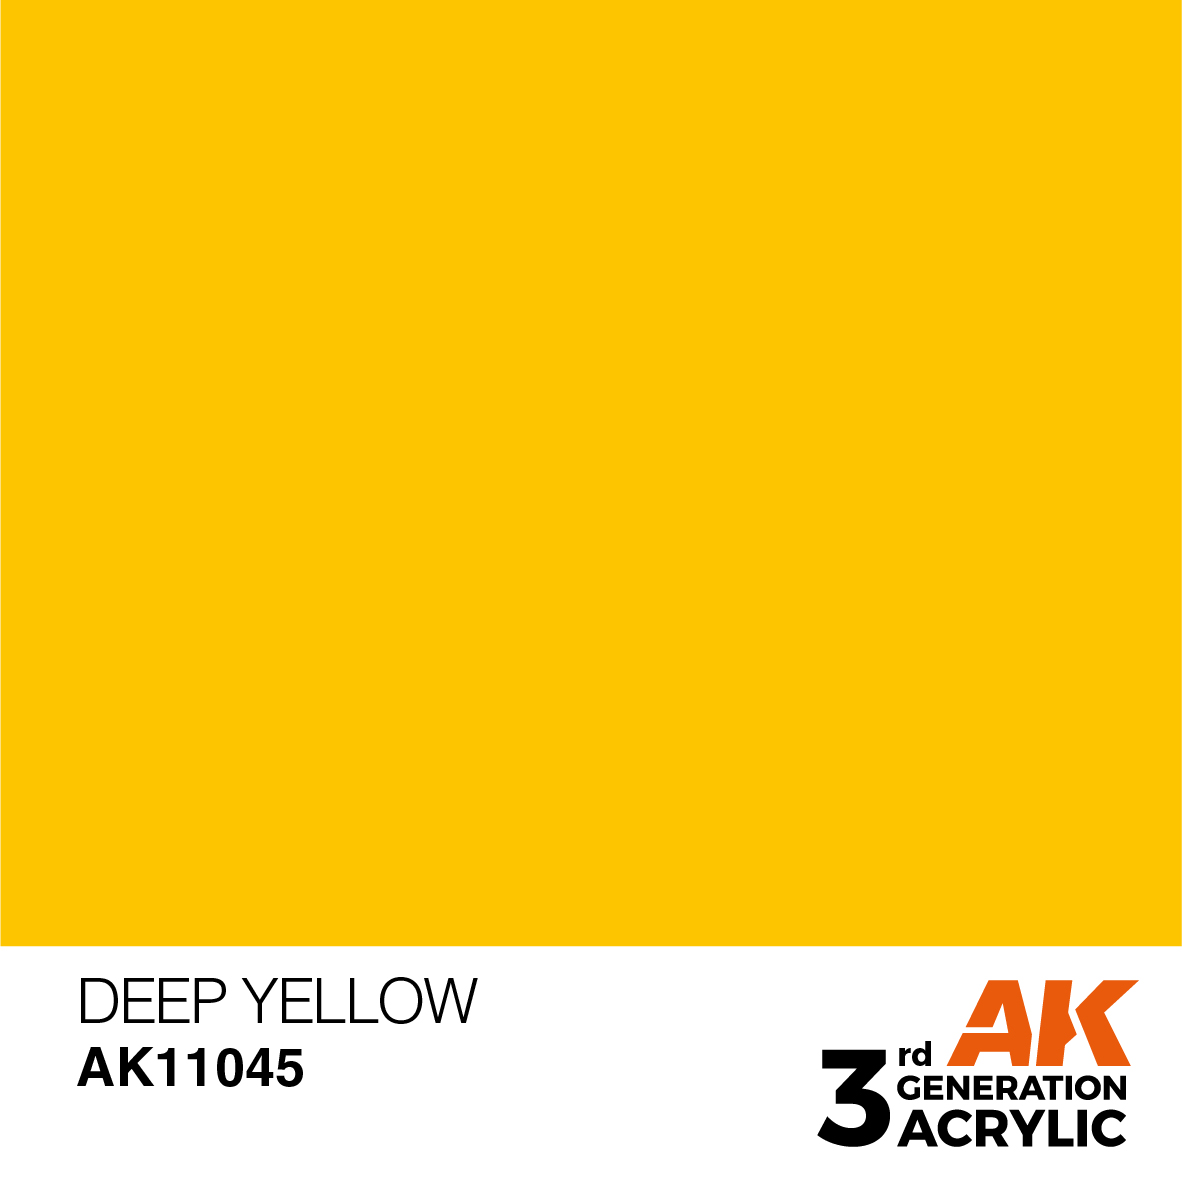 Deep Yellow – Intense